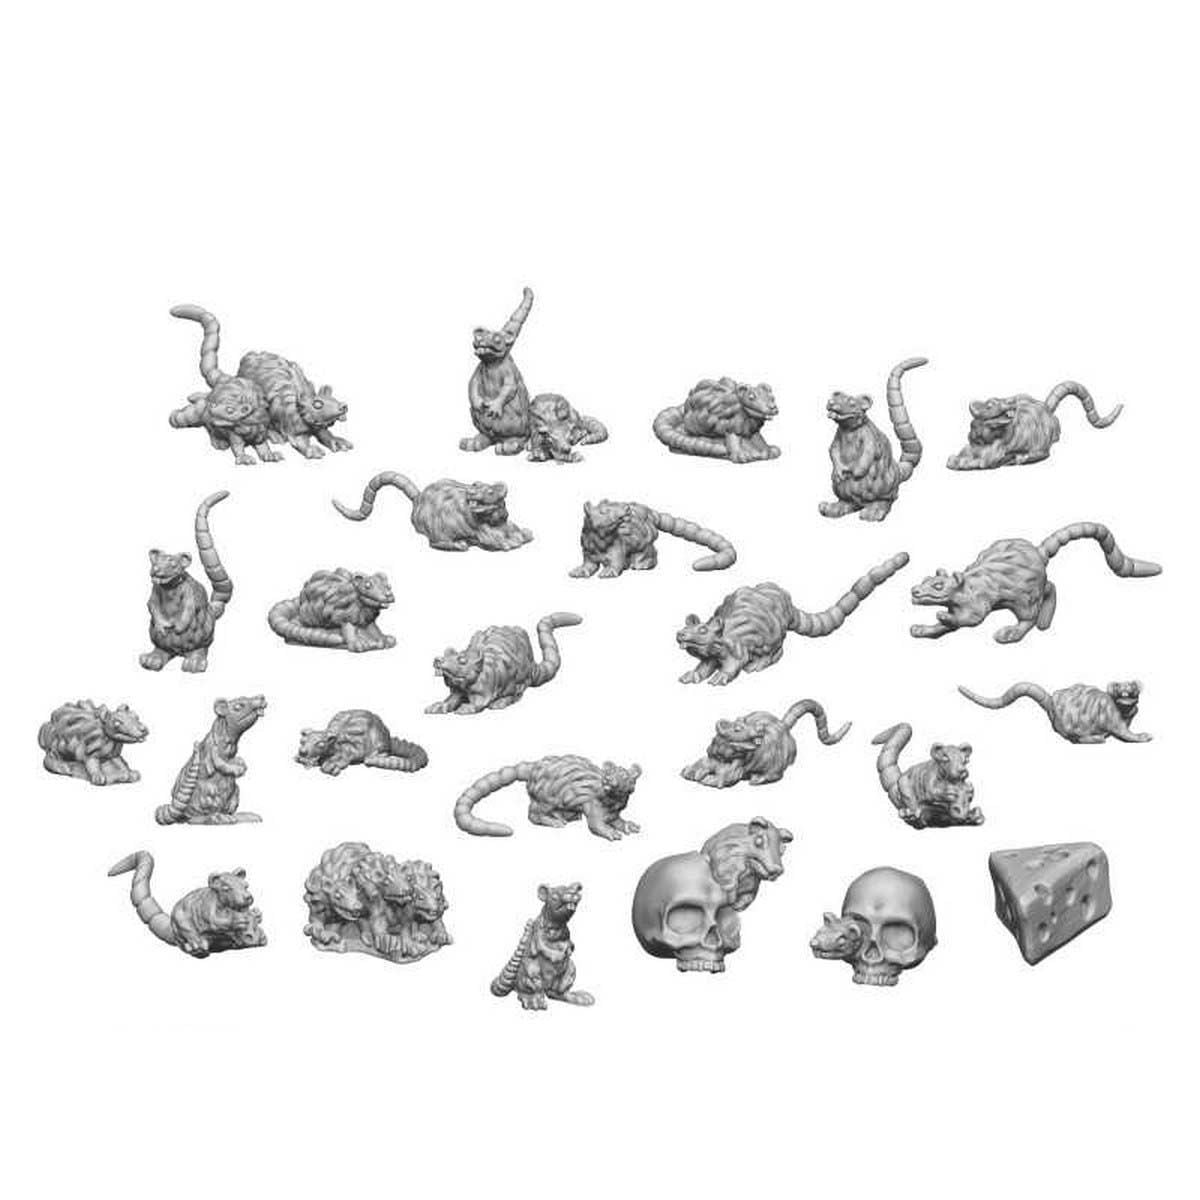 3D Printed Set - Small Rats